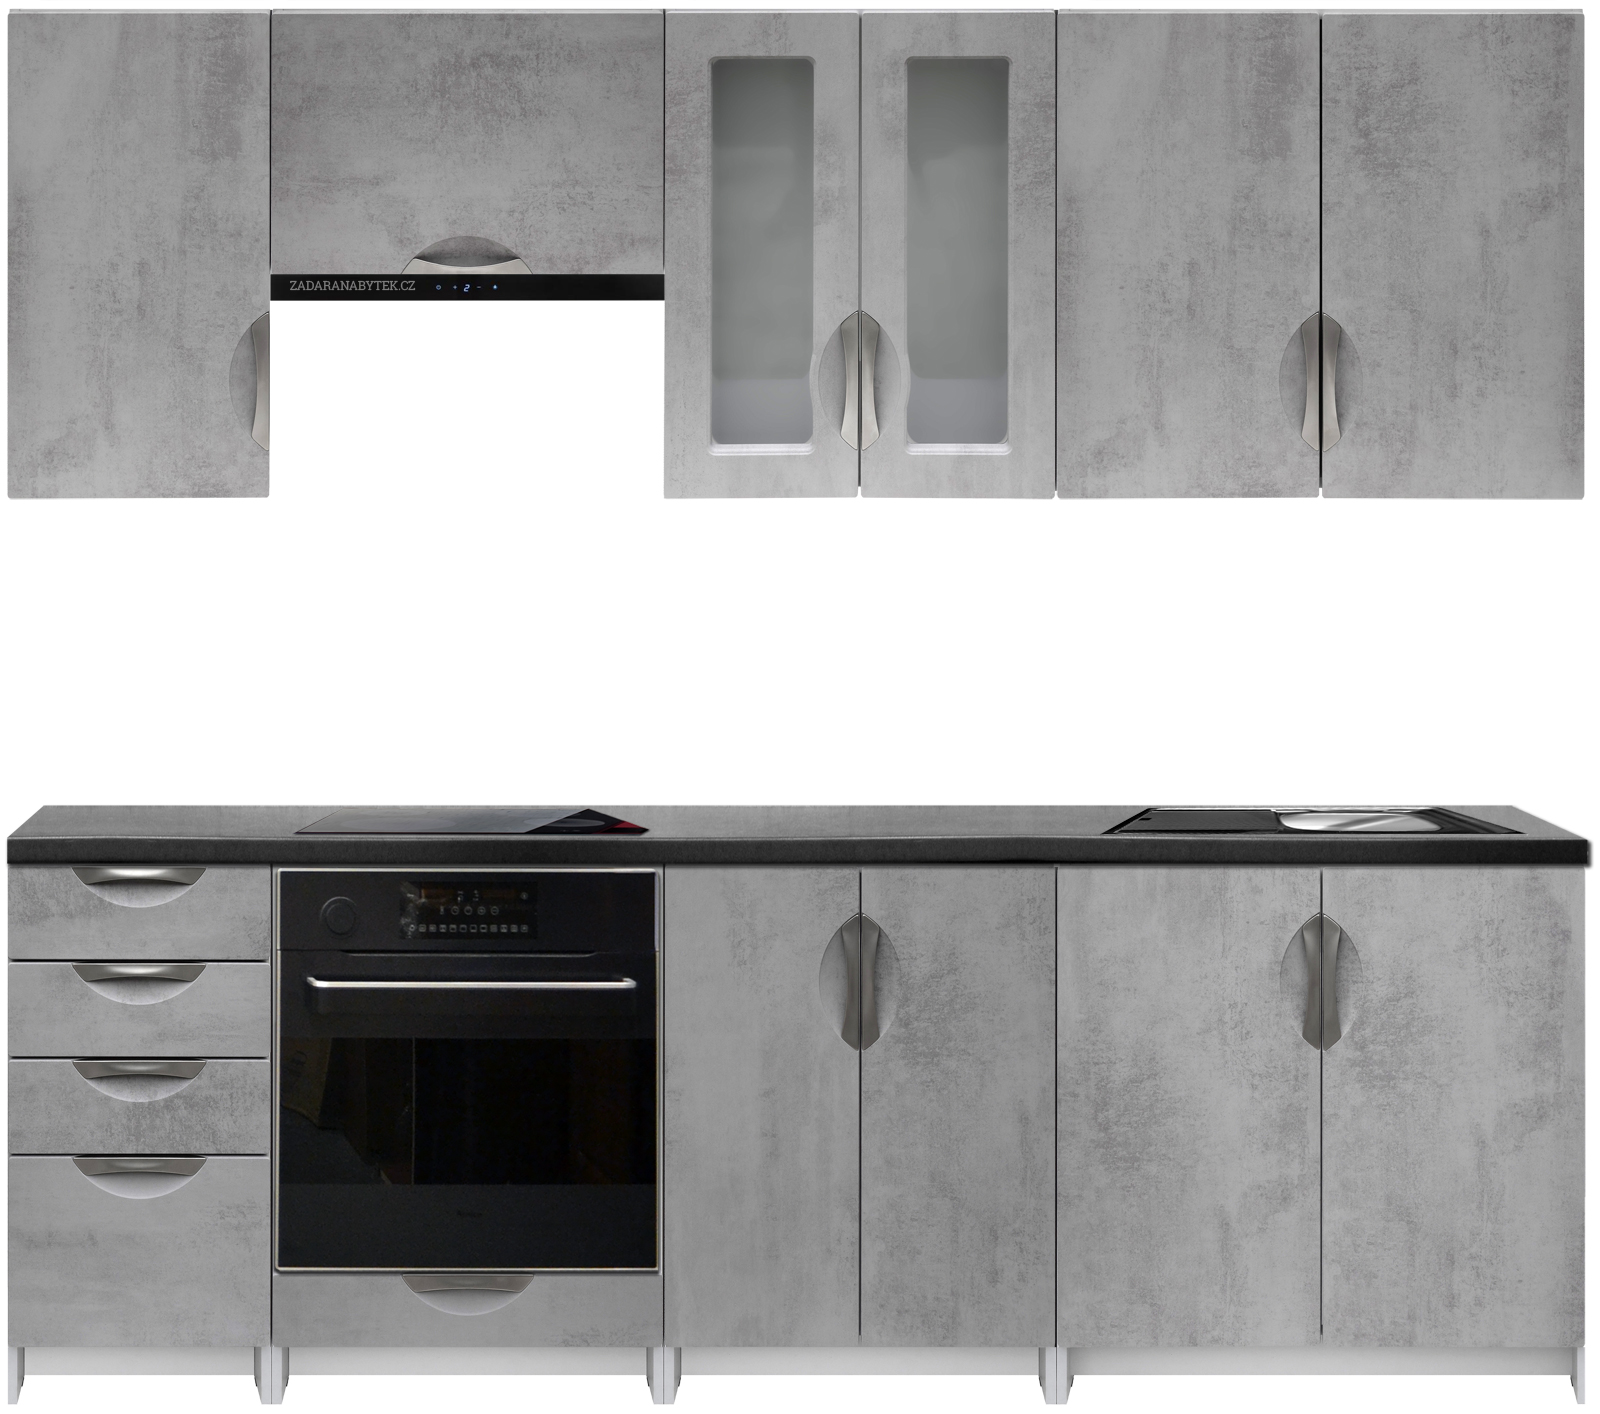 Kuchyňská linka 240 cm barva beton korpus šedý